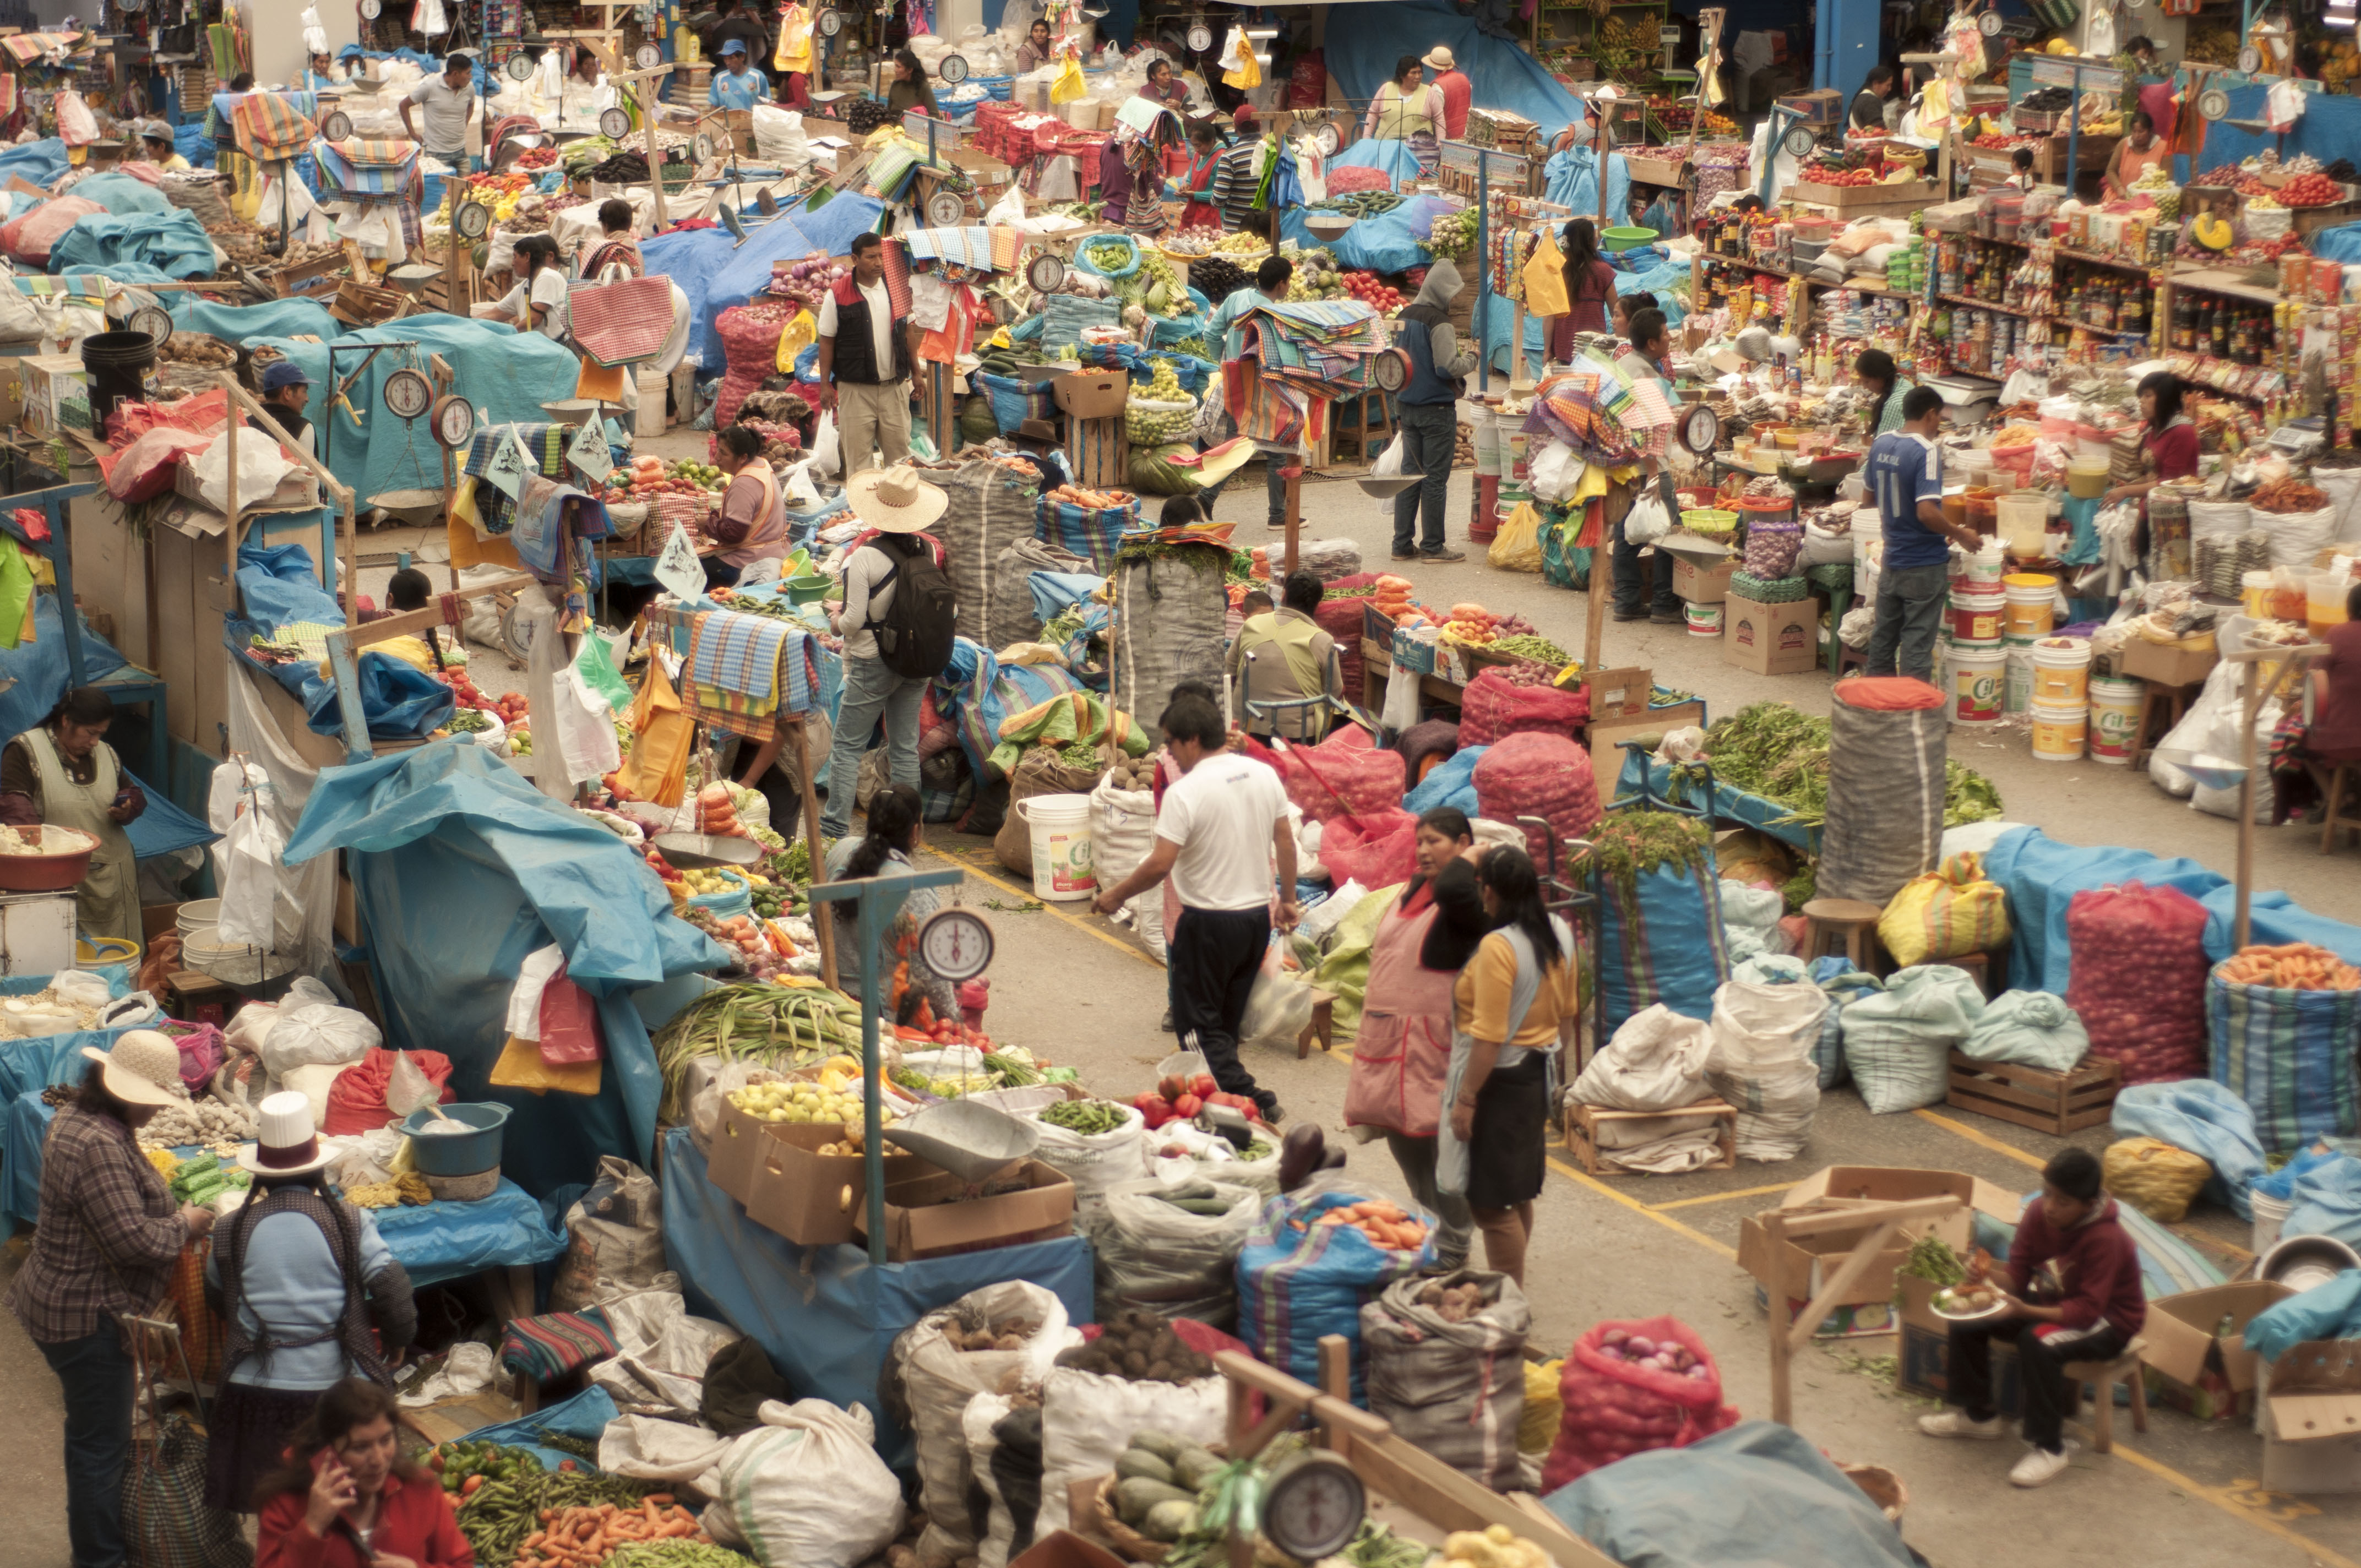 Farmers Market in Peru